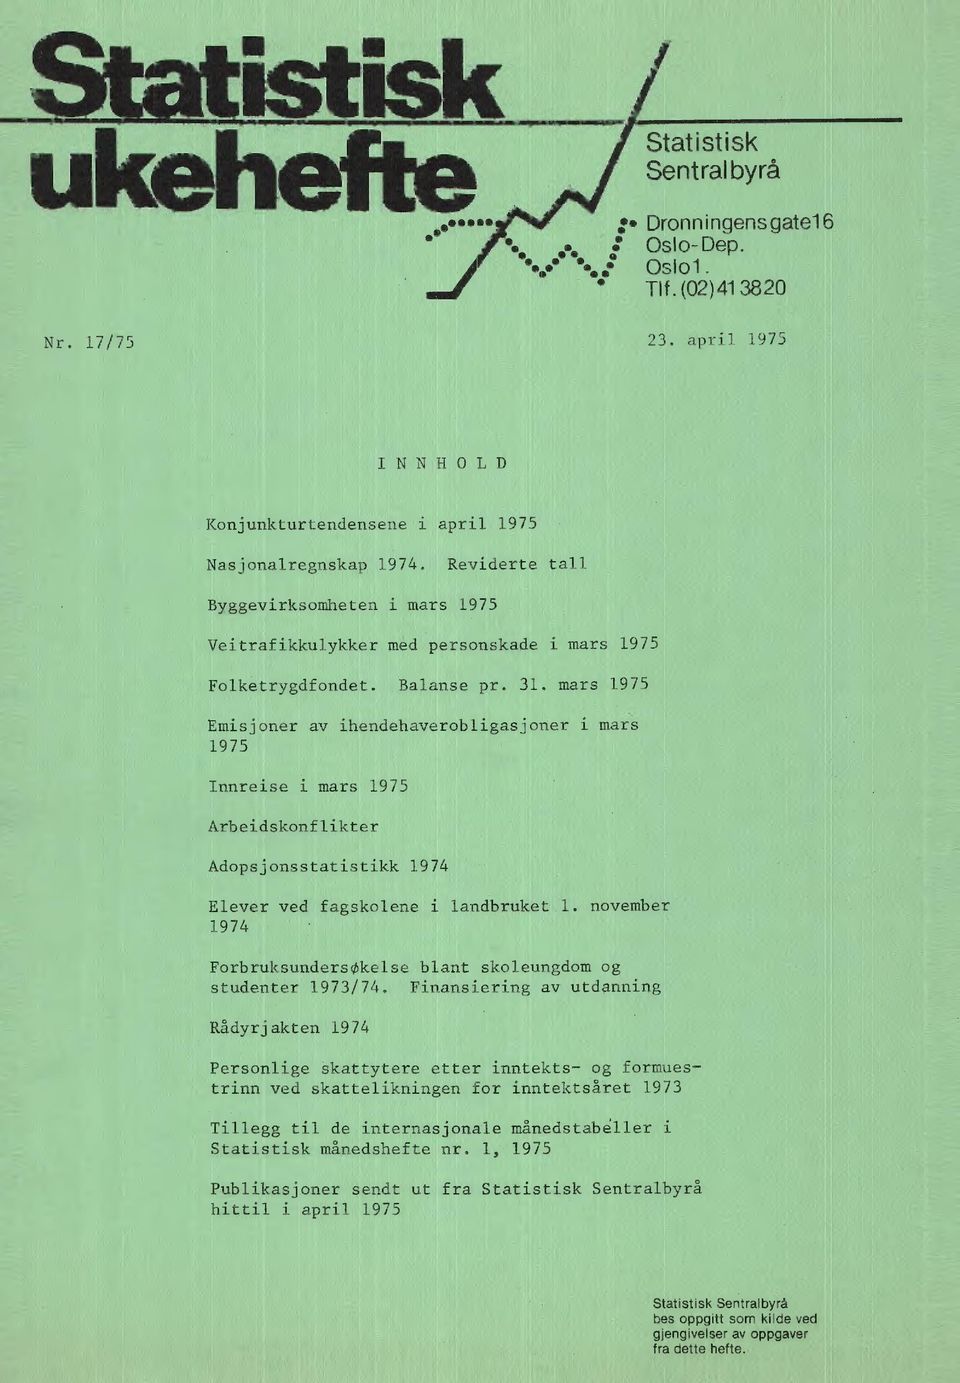 november 1974 ForbruksundersOkelse blant skoleungdom og studenter 1973/74.